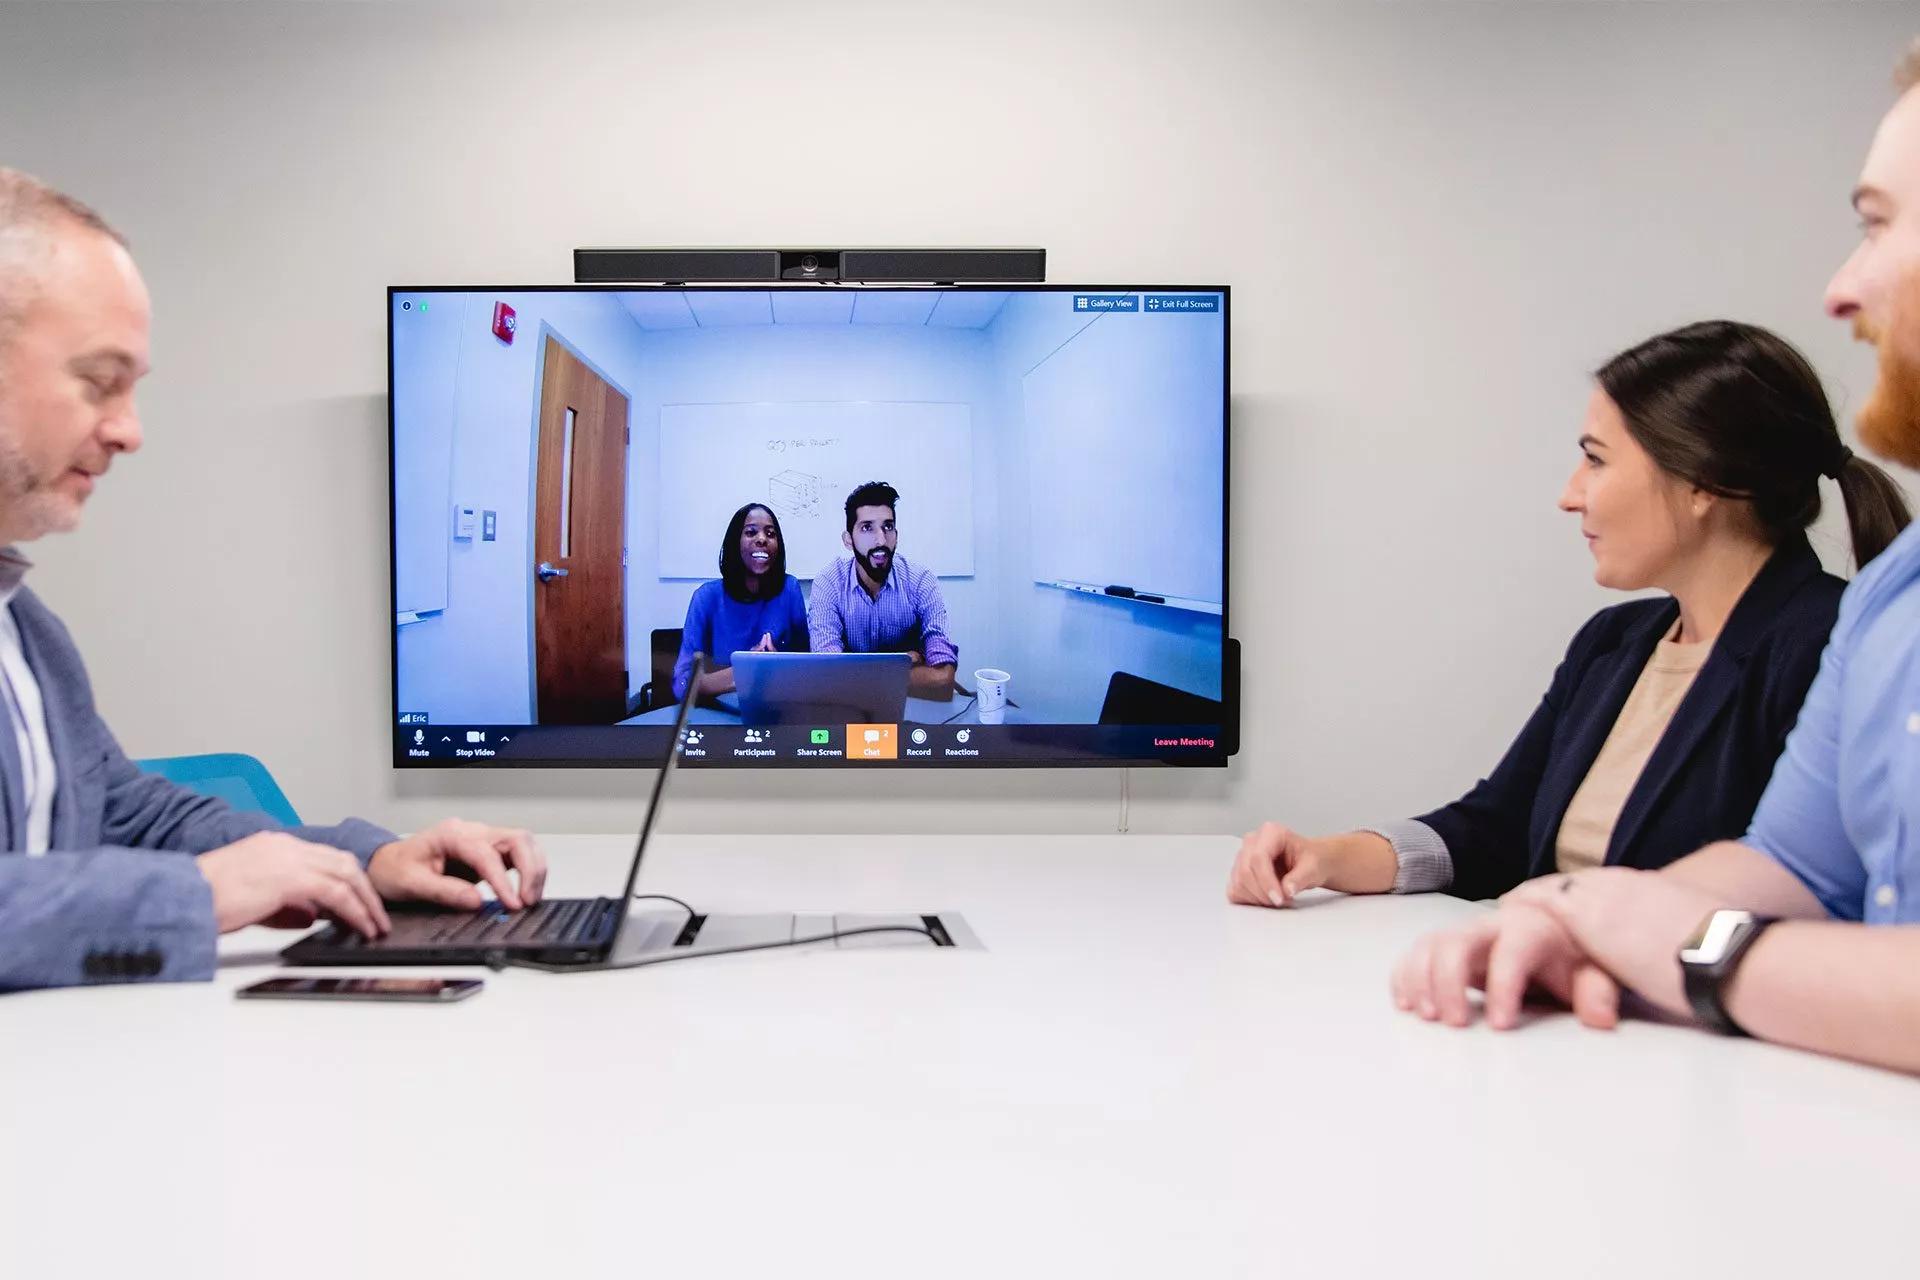 Un grupo de empleados se sienta en una reunión por videoconferencia y ve una pantalla